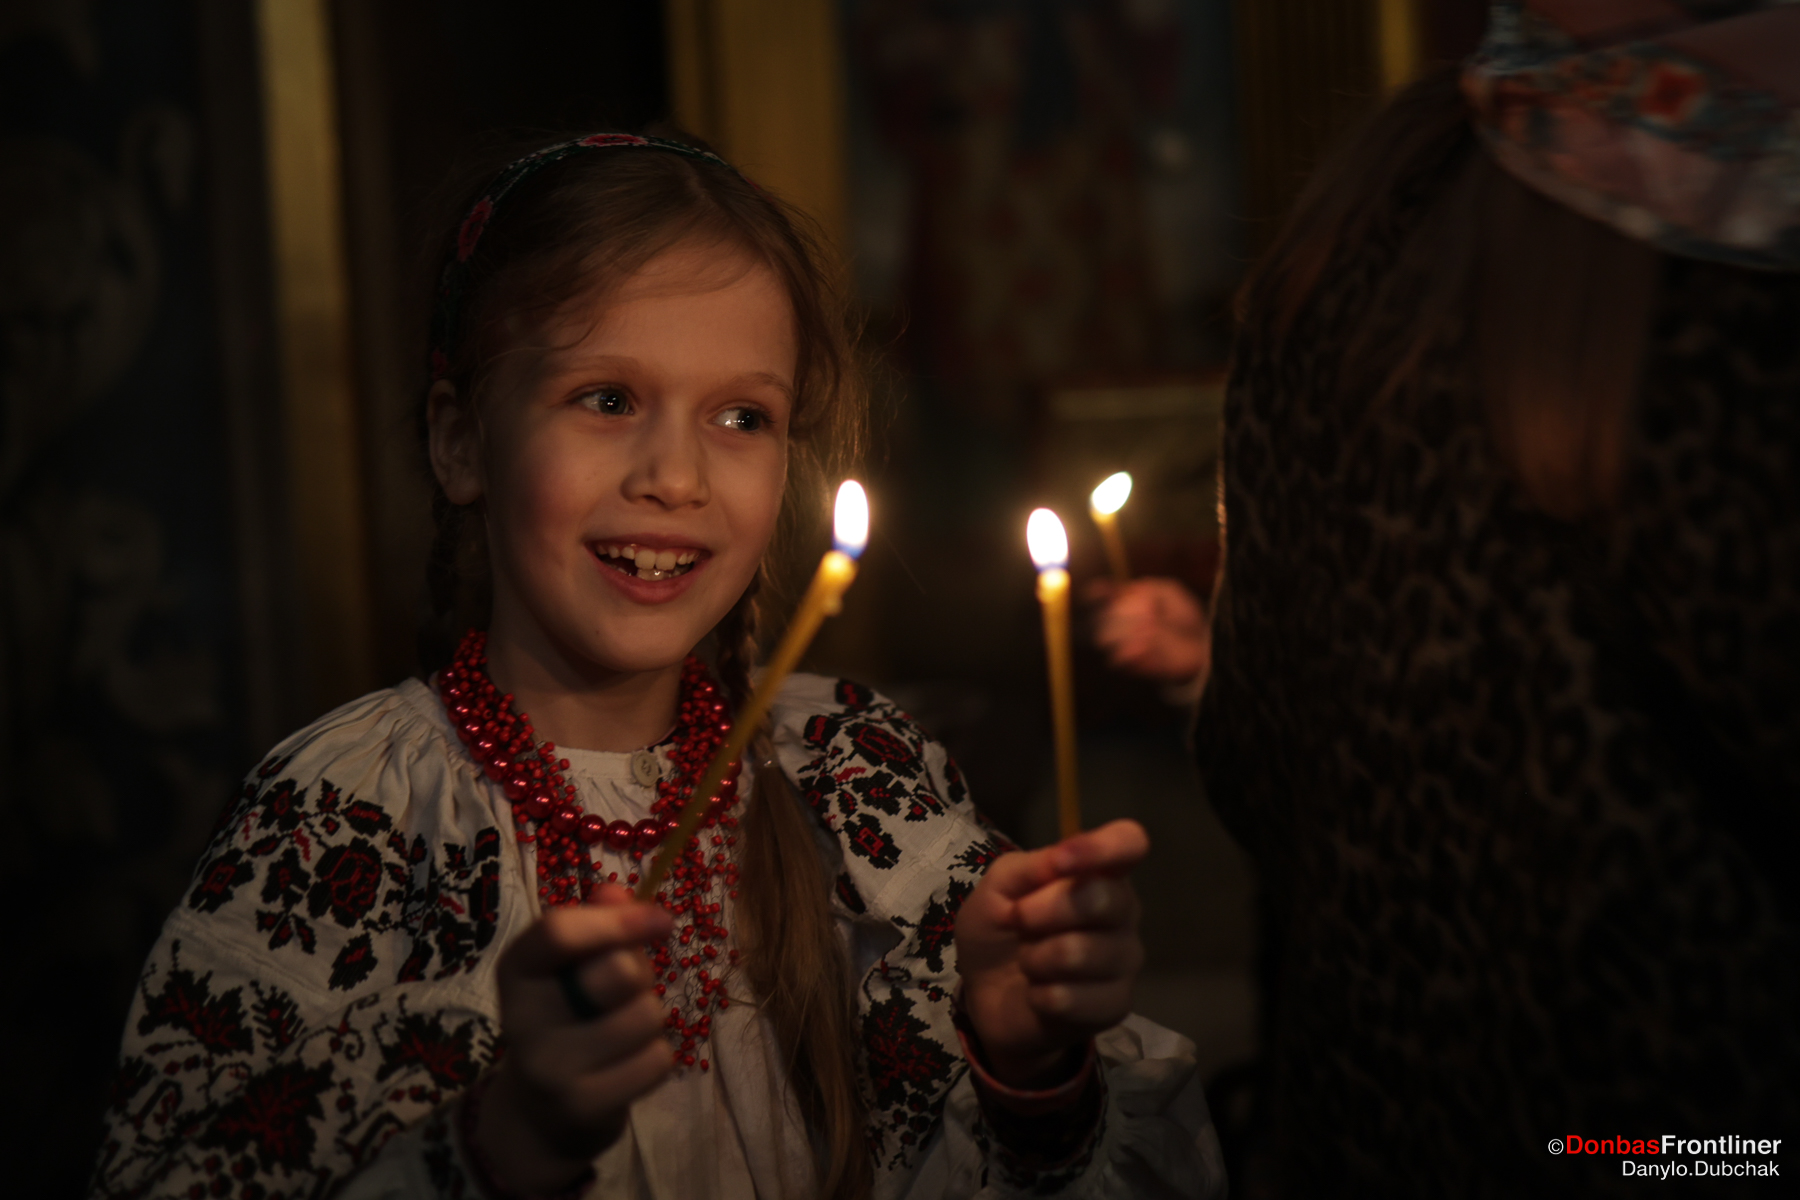 Donbas Frontliner / Михайлівський собор: дівчинка зі свічками